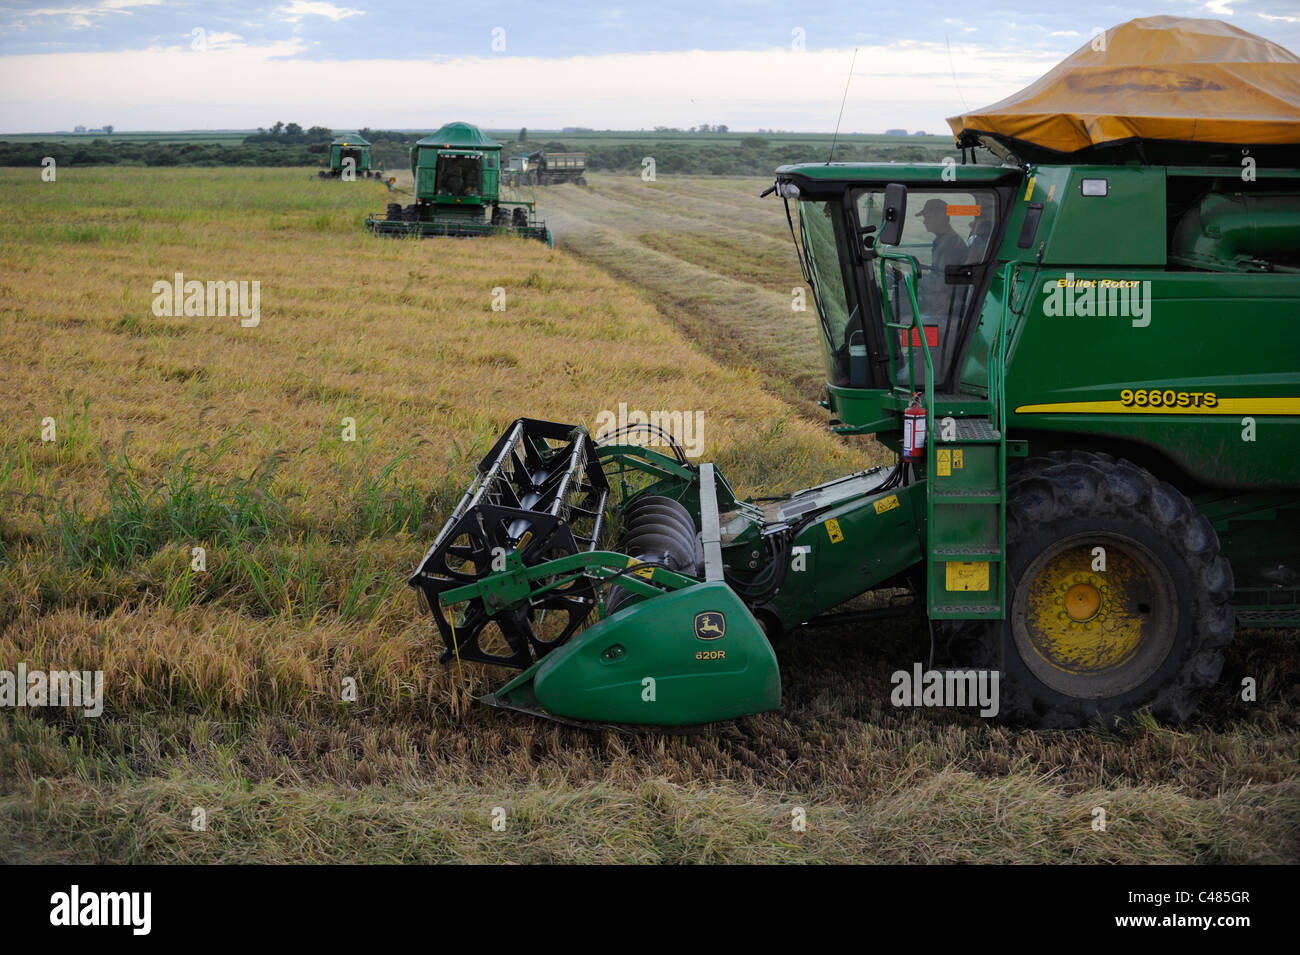 L'URUGUAY Bella Uniòn , 2100 hectares ferme près de fleuve Uruguay, la récolte de riz avec une moissonneuse-batteuse John Deere Banque D'Images